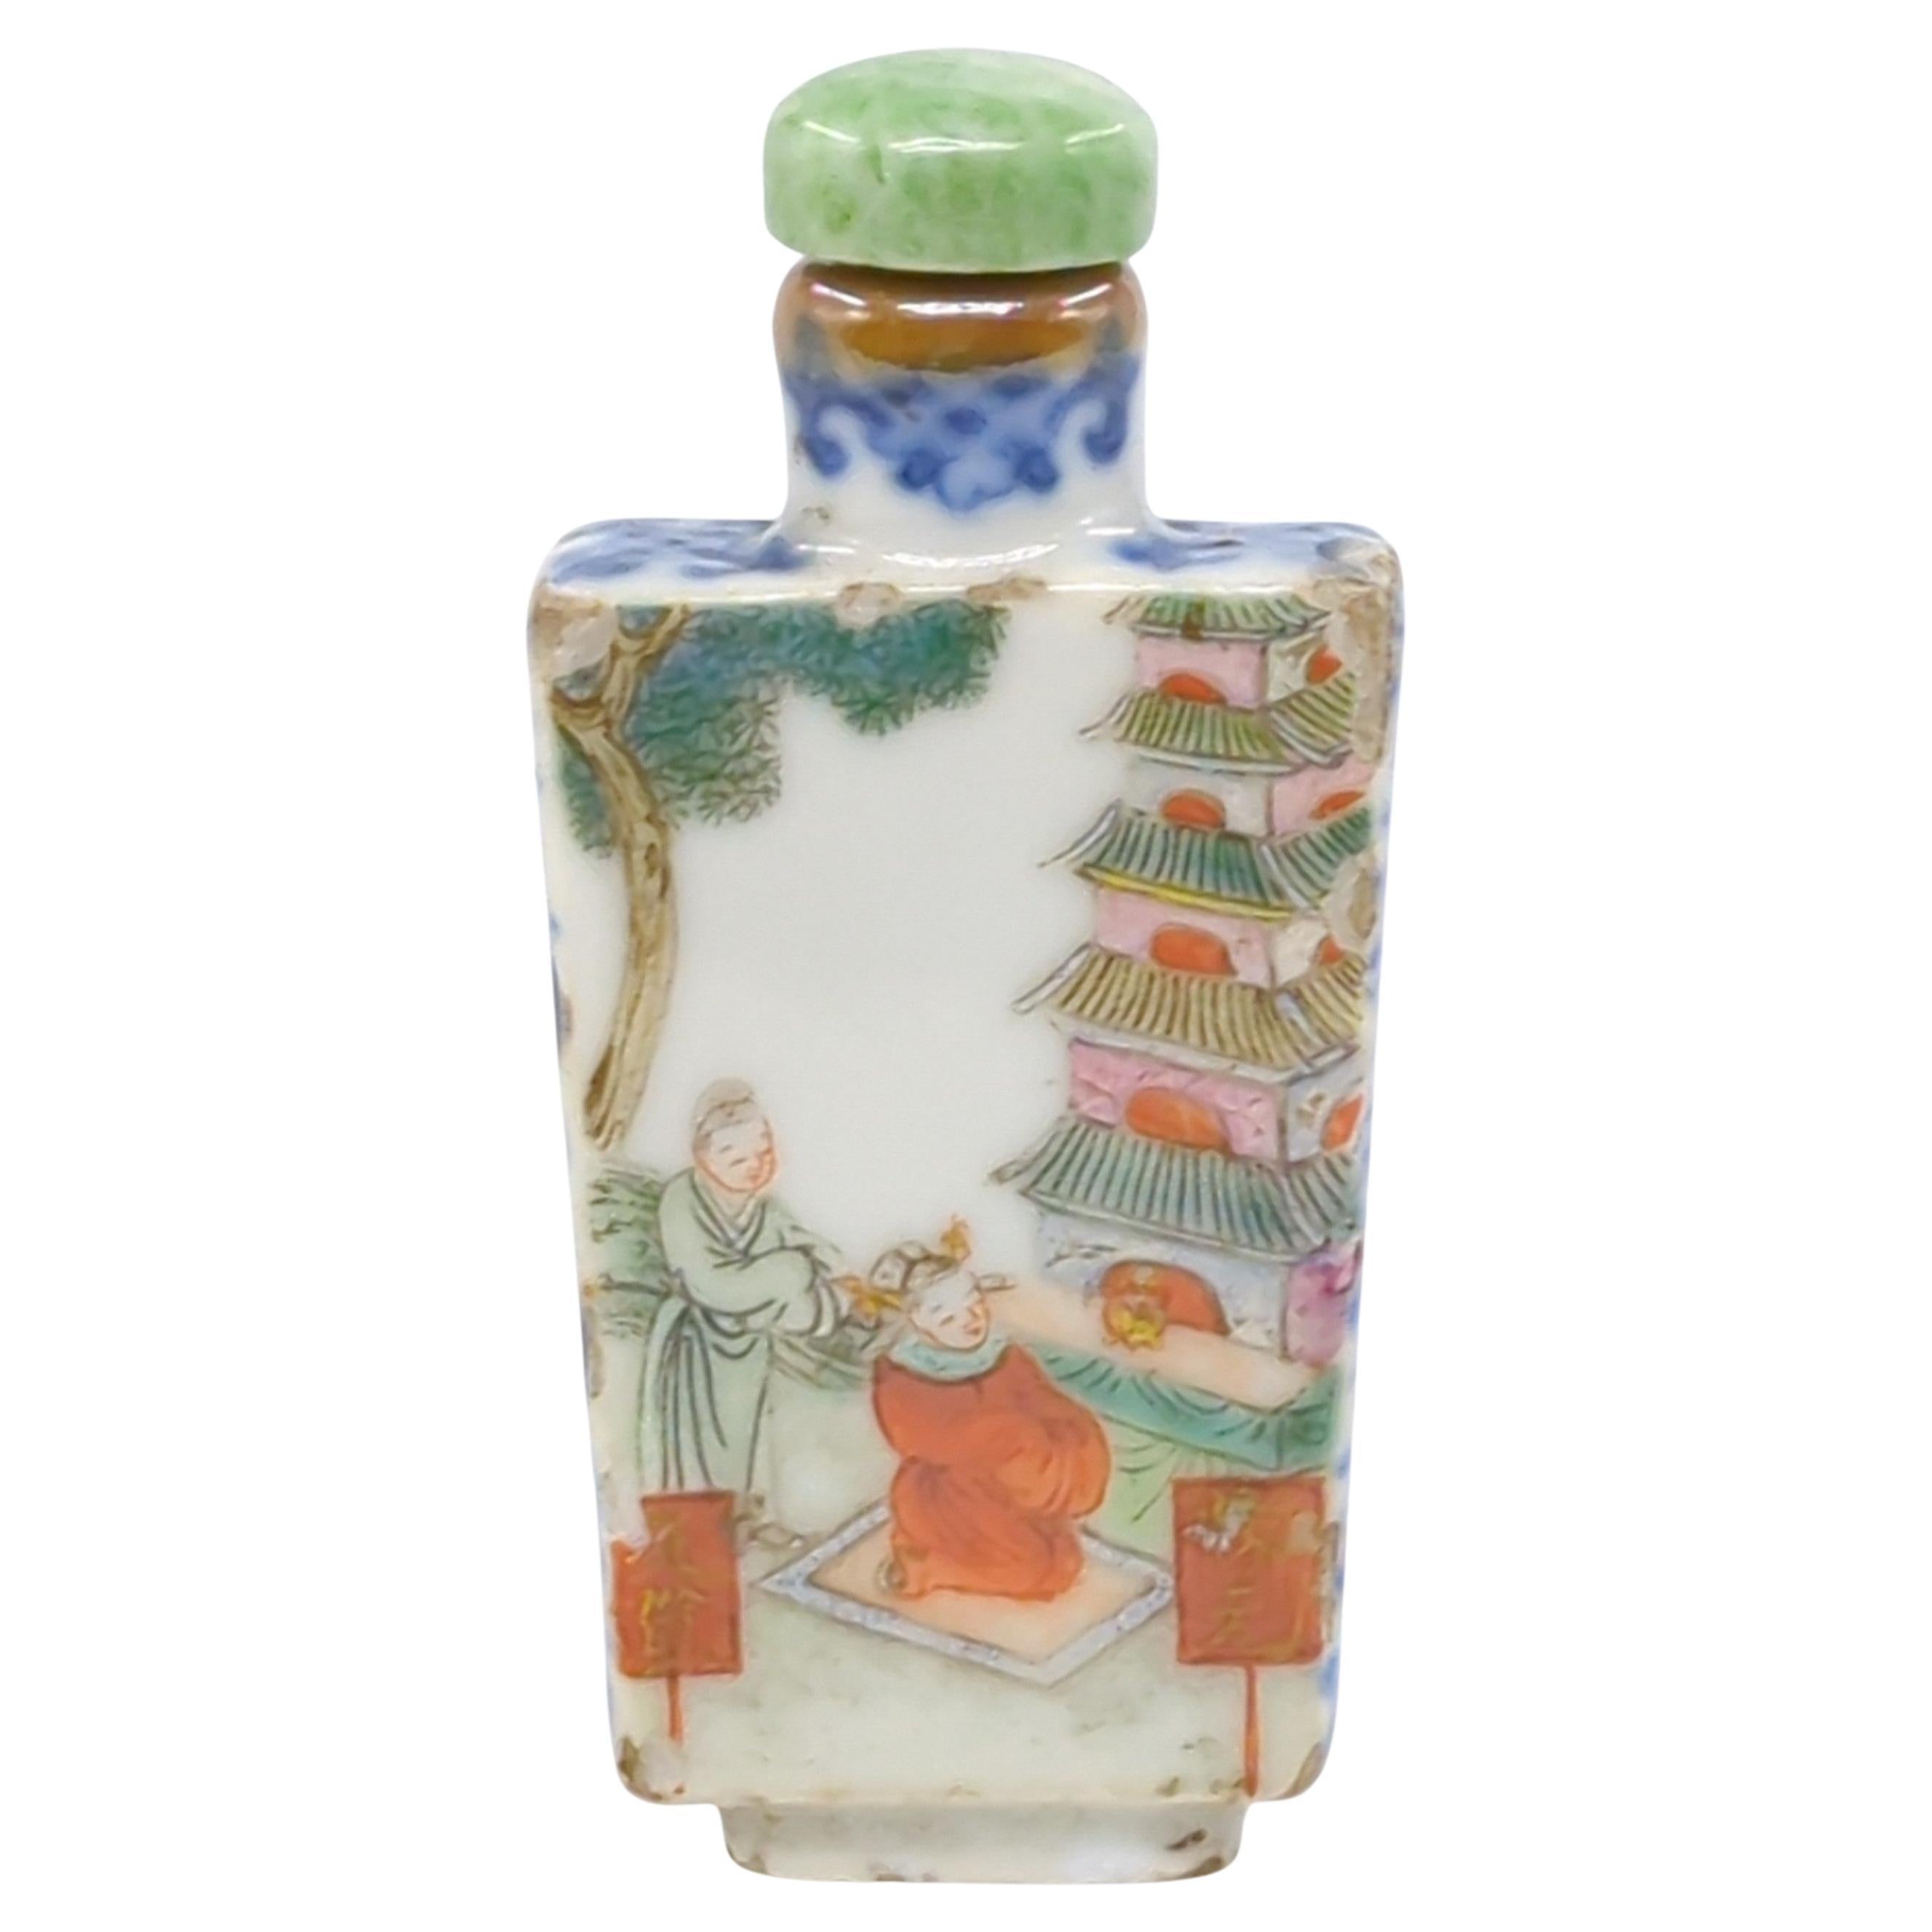 Cette fine bouteille à priser en porcelaine chinoise de la période Jiaqing de la dynastie Qing  est de forme rectangulaire effilée, une forme qui allie l'élégance à la robustesse.

Le haut et les côtés de la bouteille sont ornés de décorations en